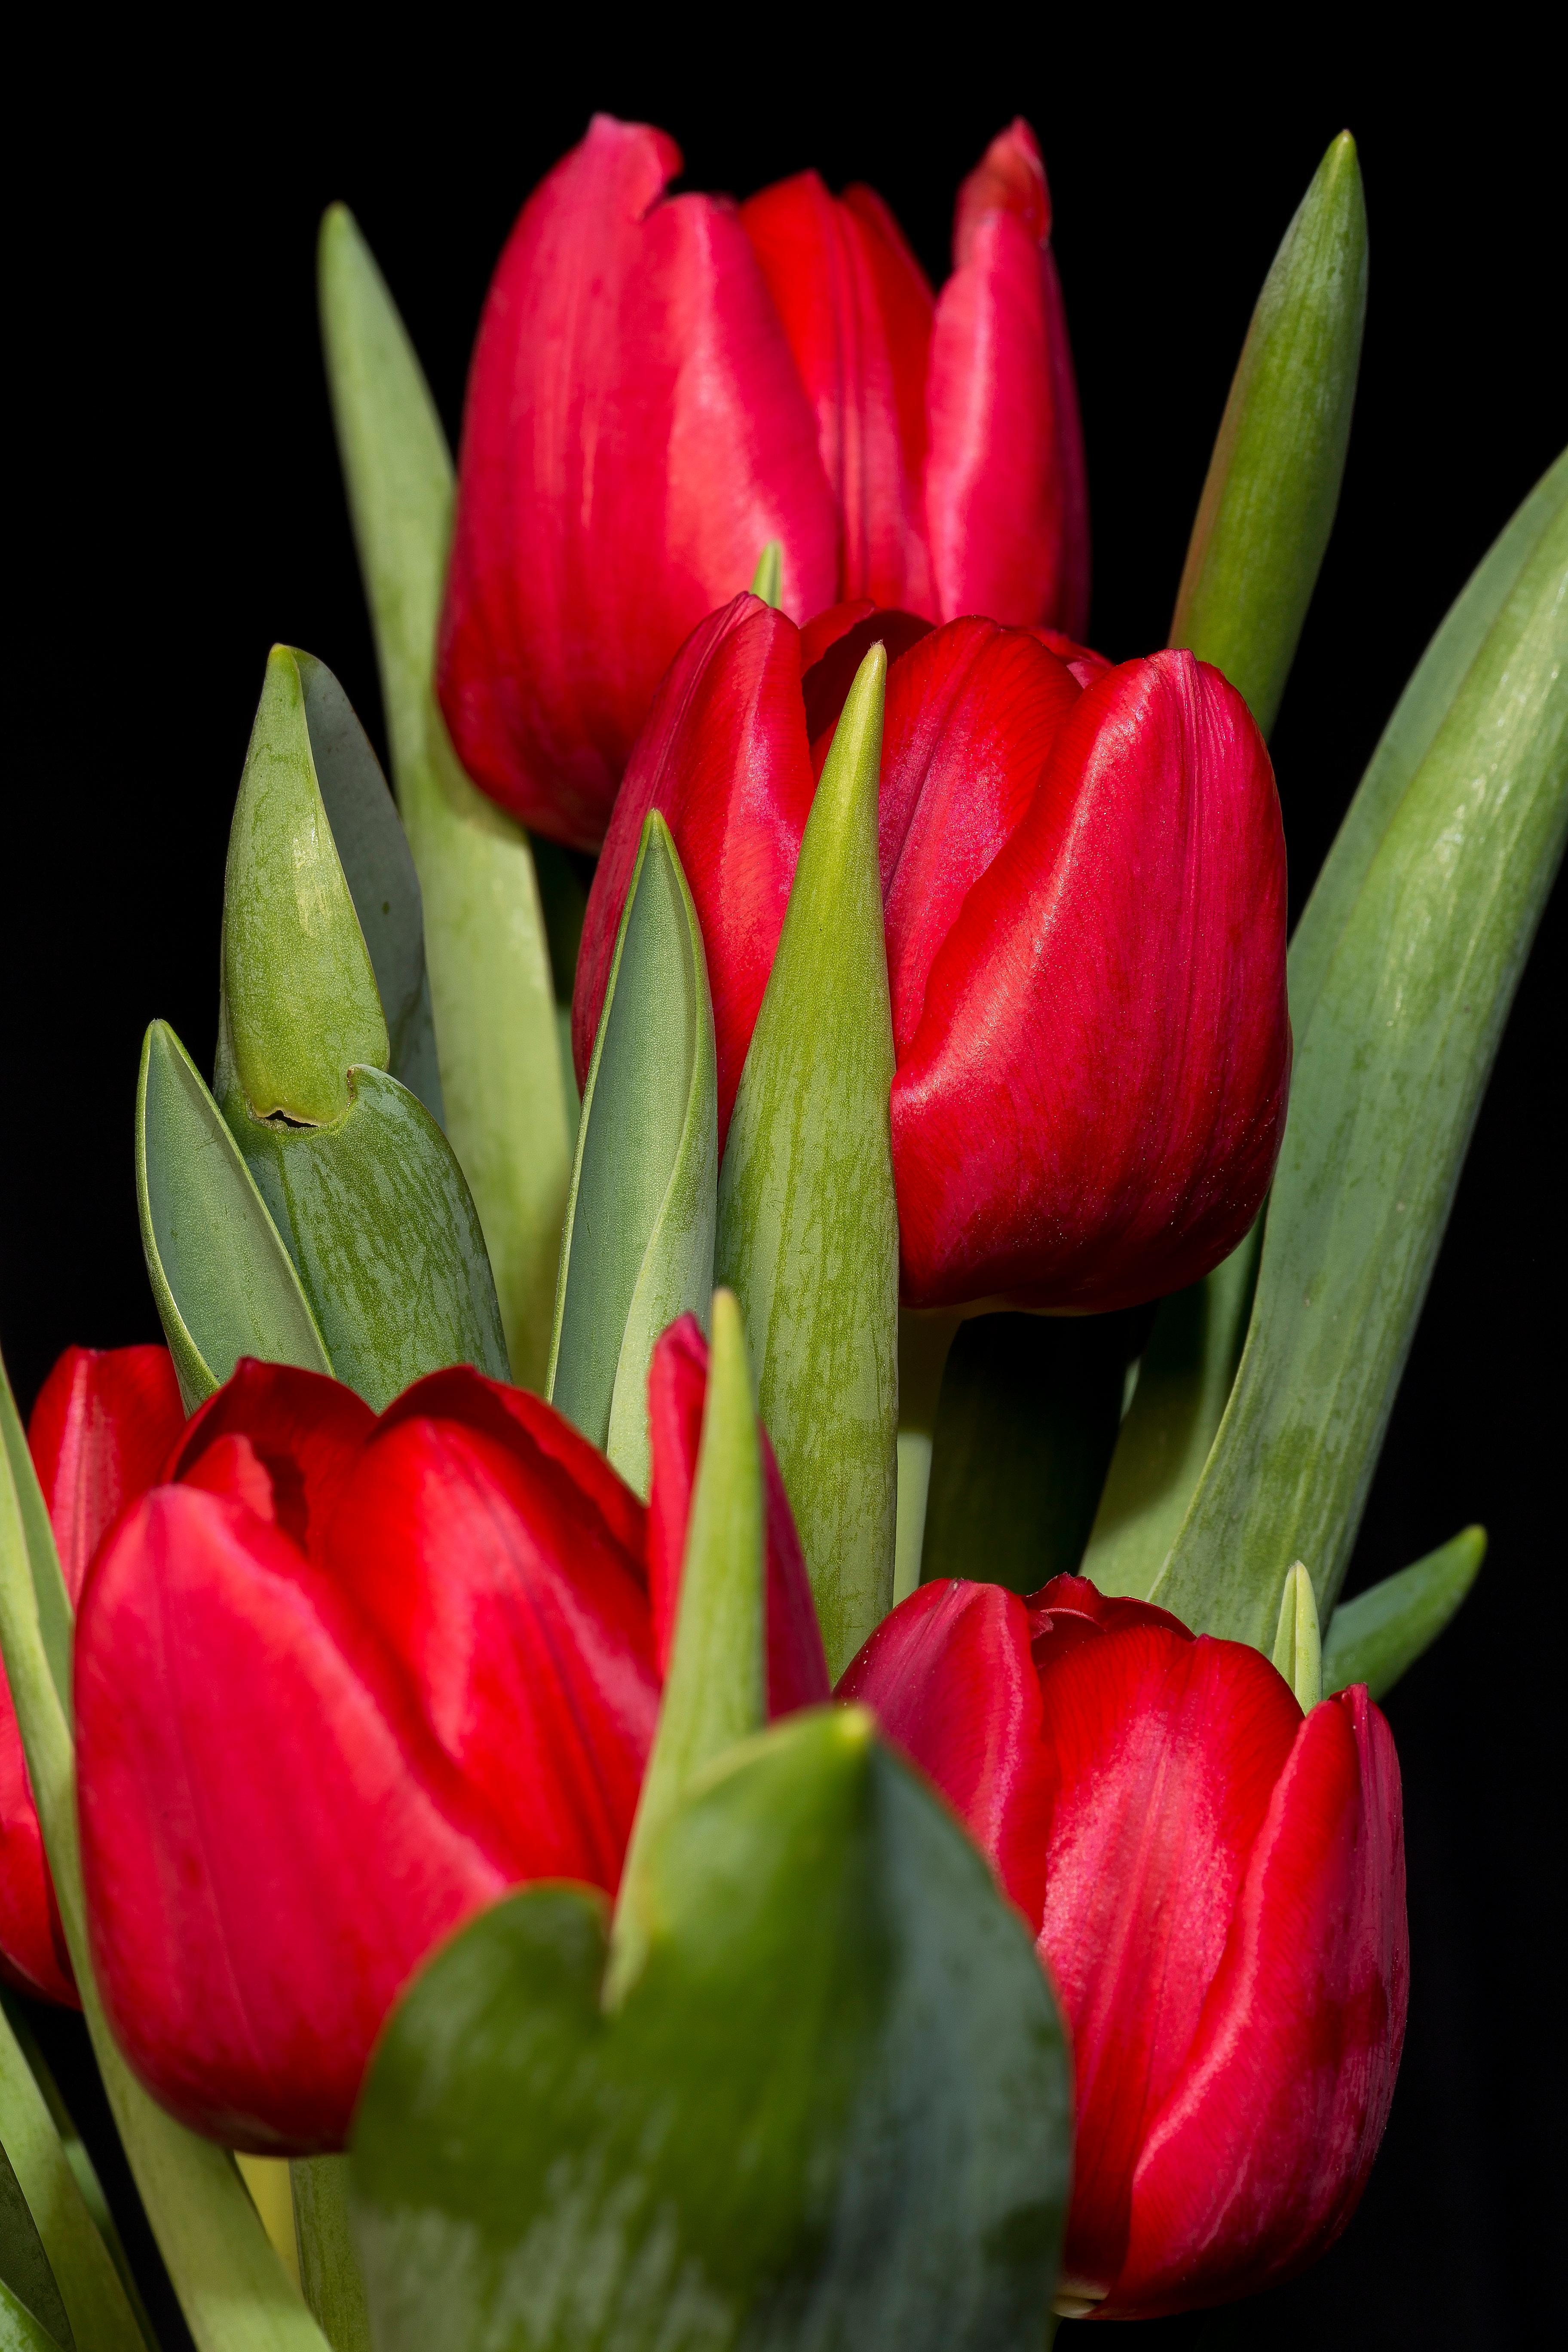 Tulip Triumph 'Pallade' - Tulip from Leo Berbee Bulb Company